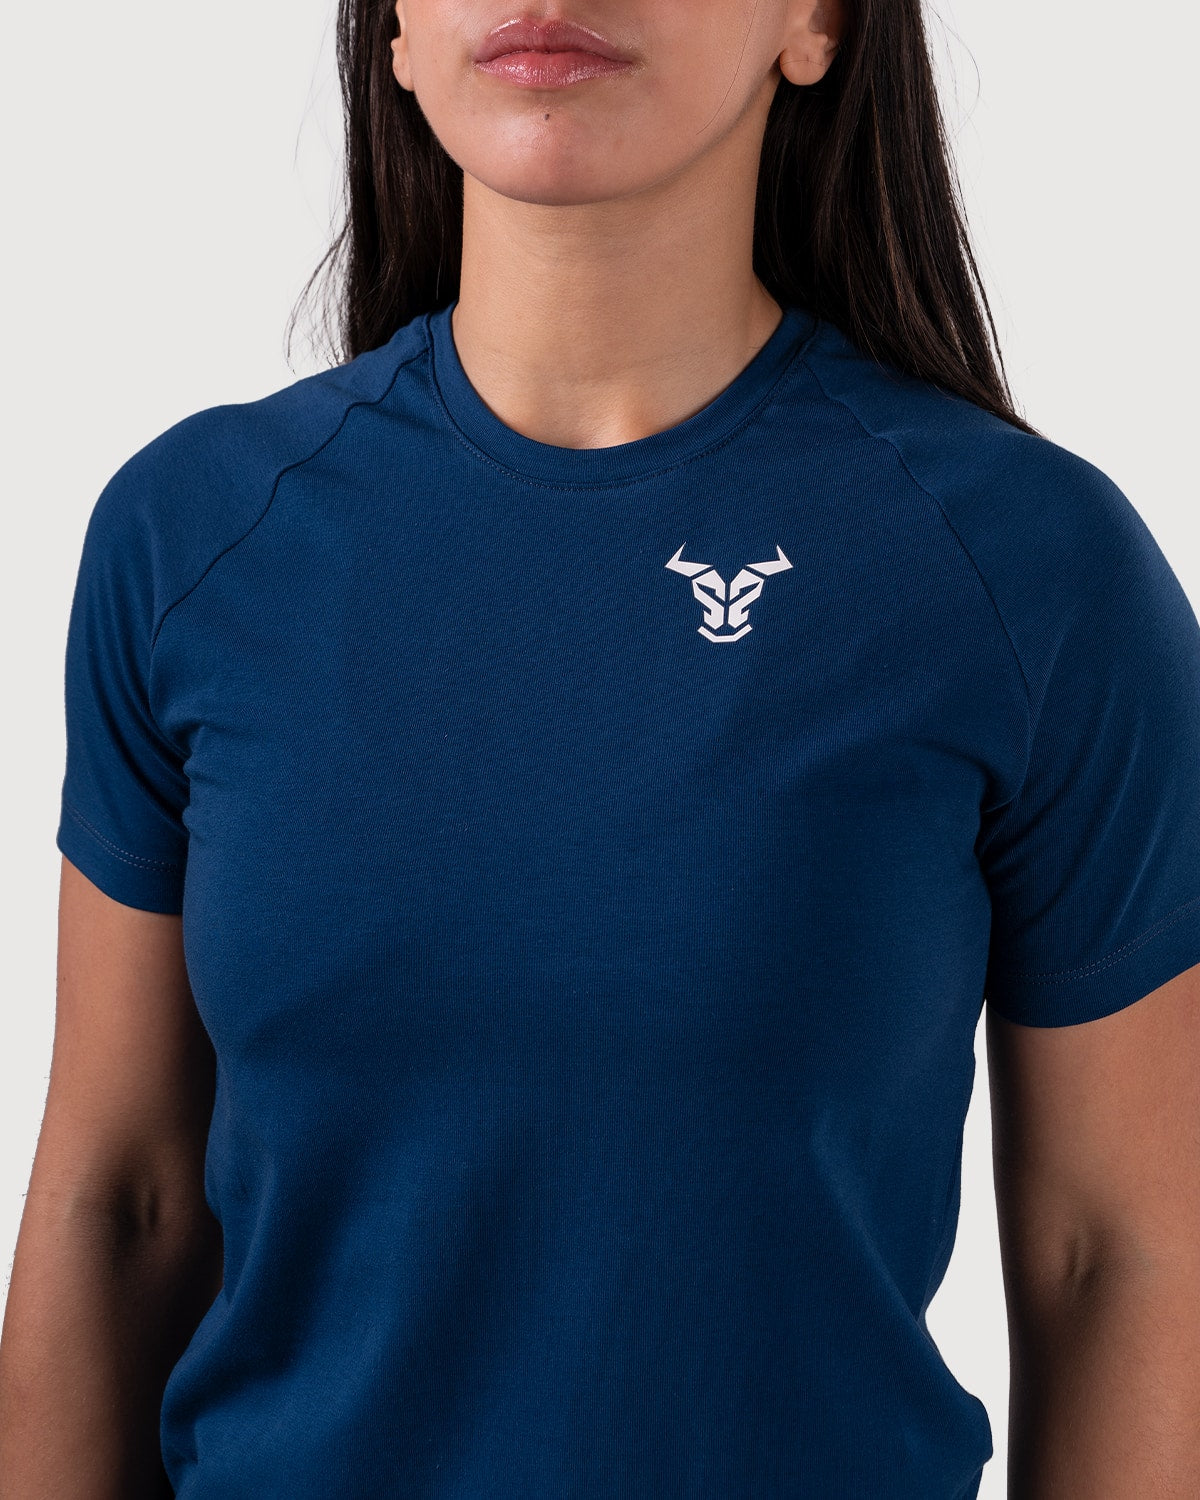 Essential T-shirt Women - Navy